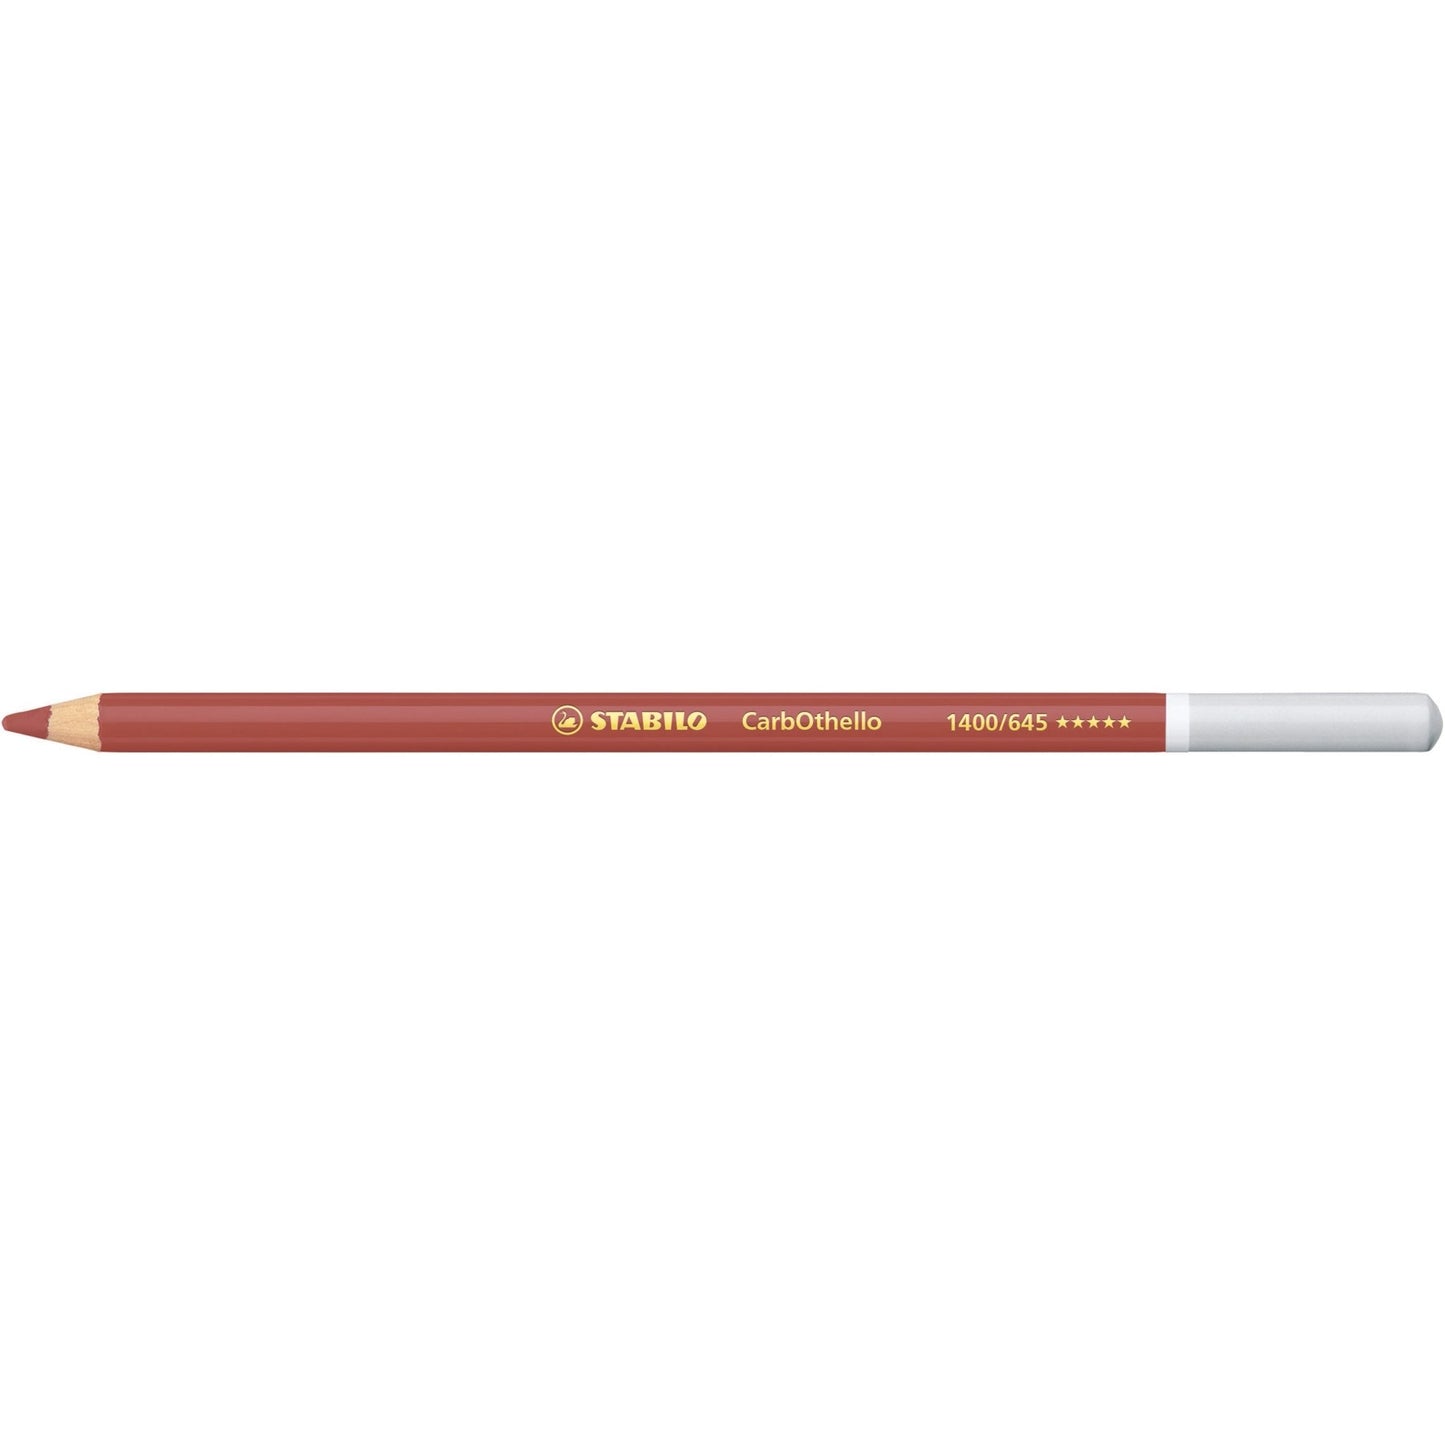 Stabilo CarbOthello Coloured Pastel Pencil 645 Caput Mortuum Red - theartshop.com.au